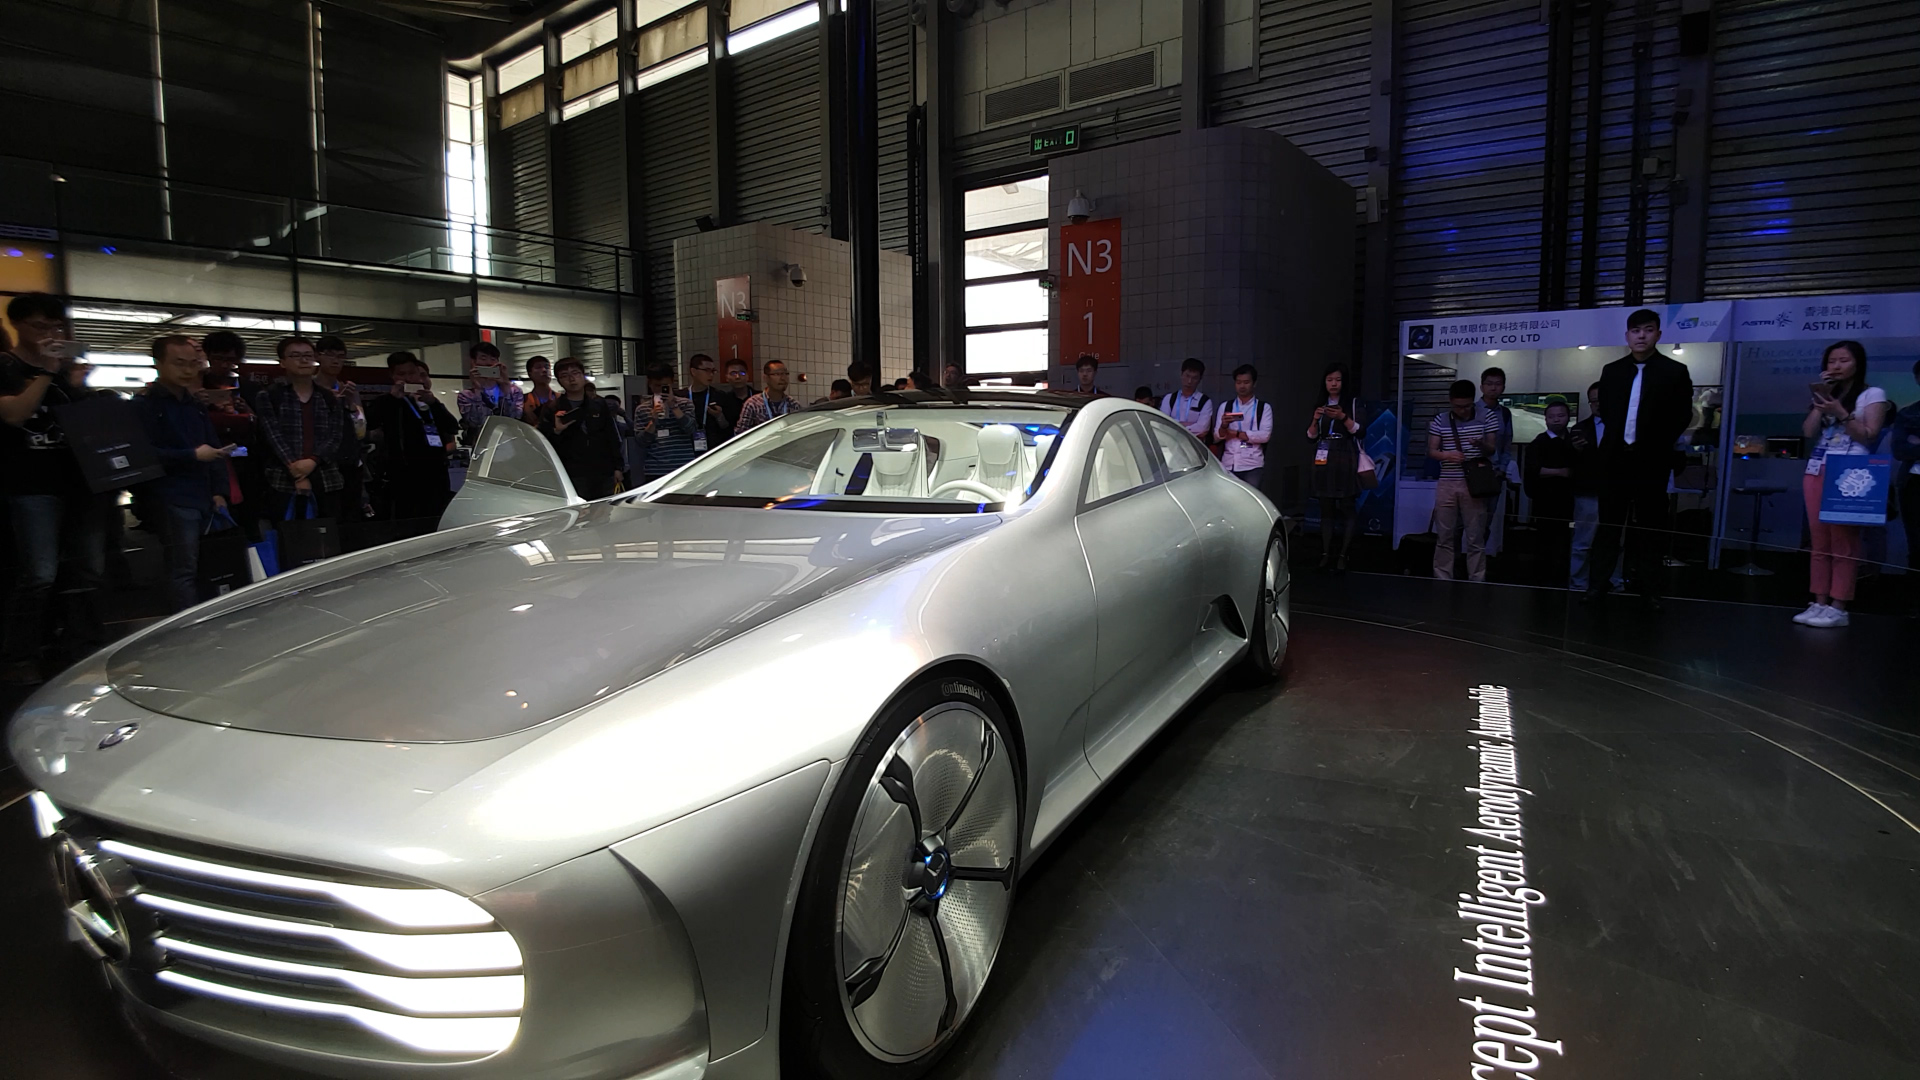 Karşınızda geleceğin otomobili: Mercedes'in yeni harikası